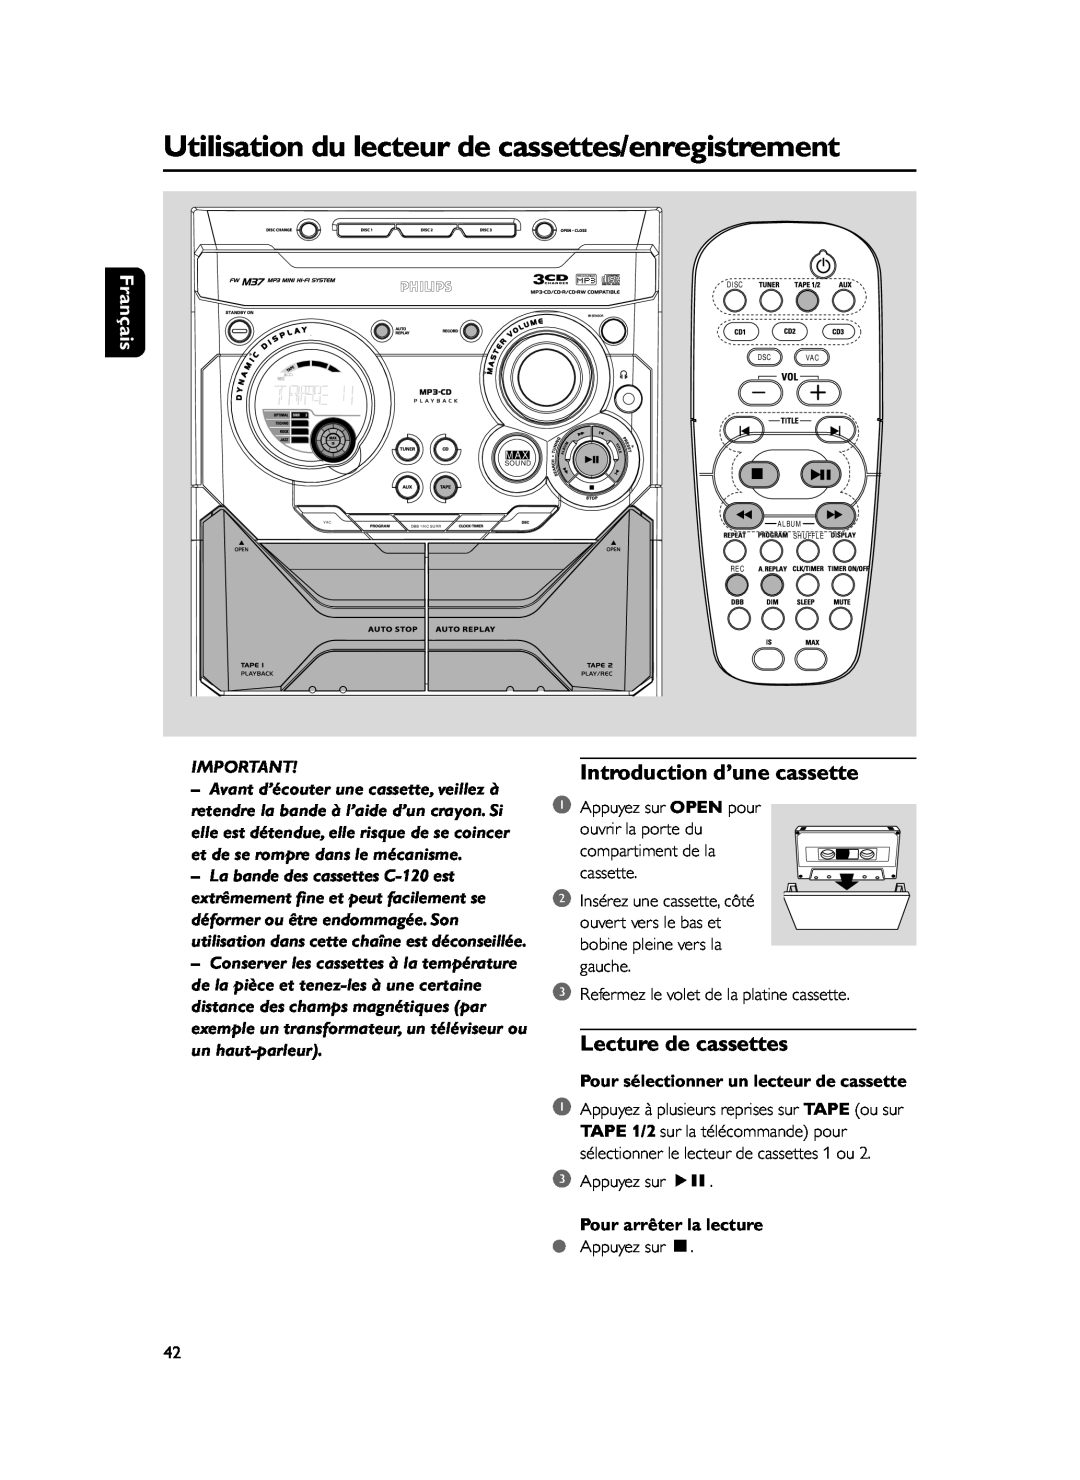 Philips FWM37 manual Introduction d’une cassette, Lecture de cassettes, Pour sélectionner un lecteur de cassette, Français 